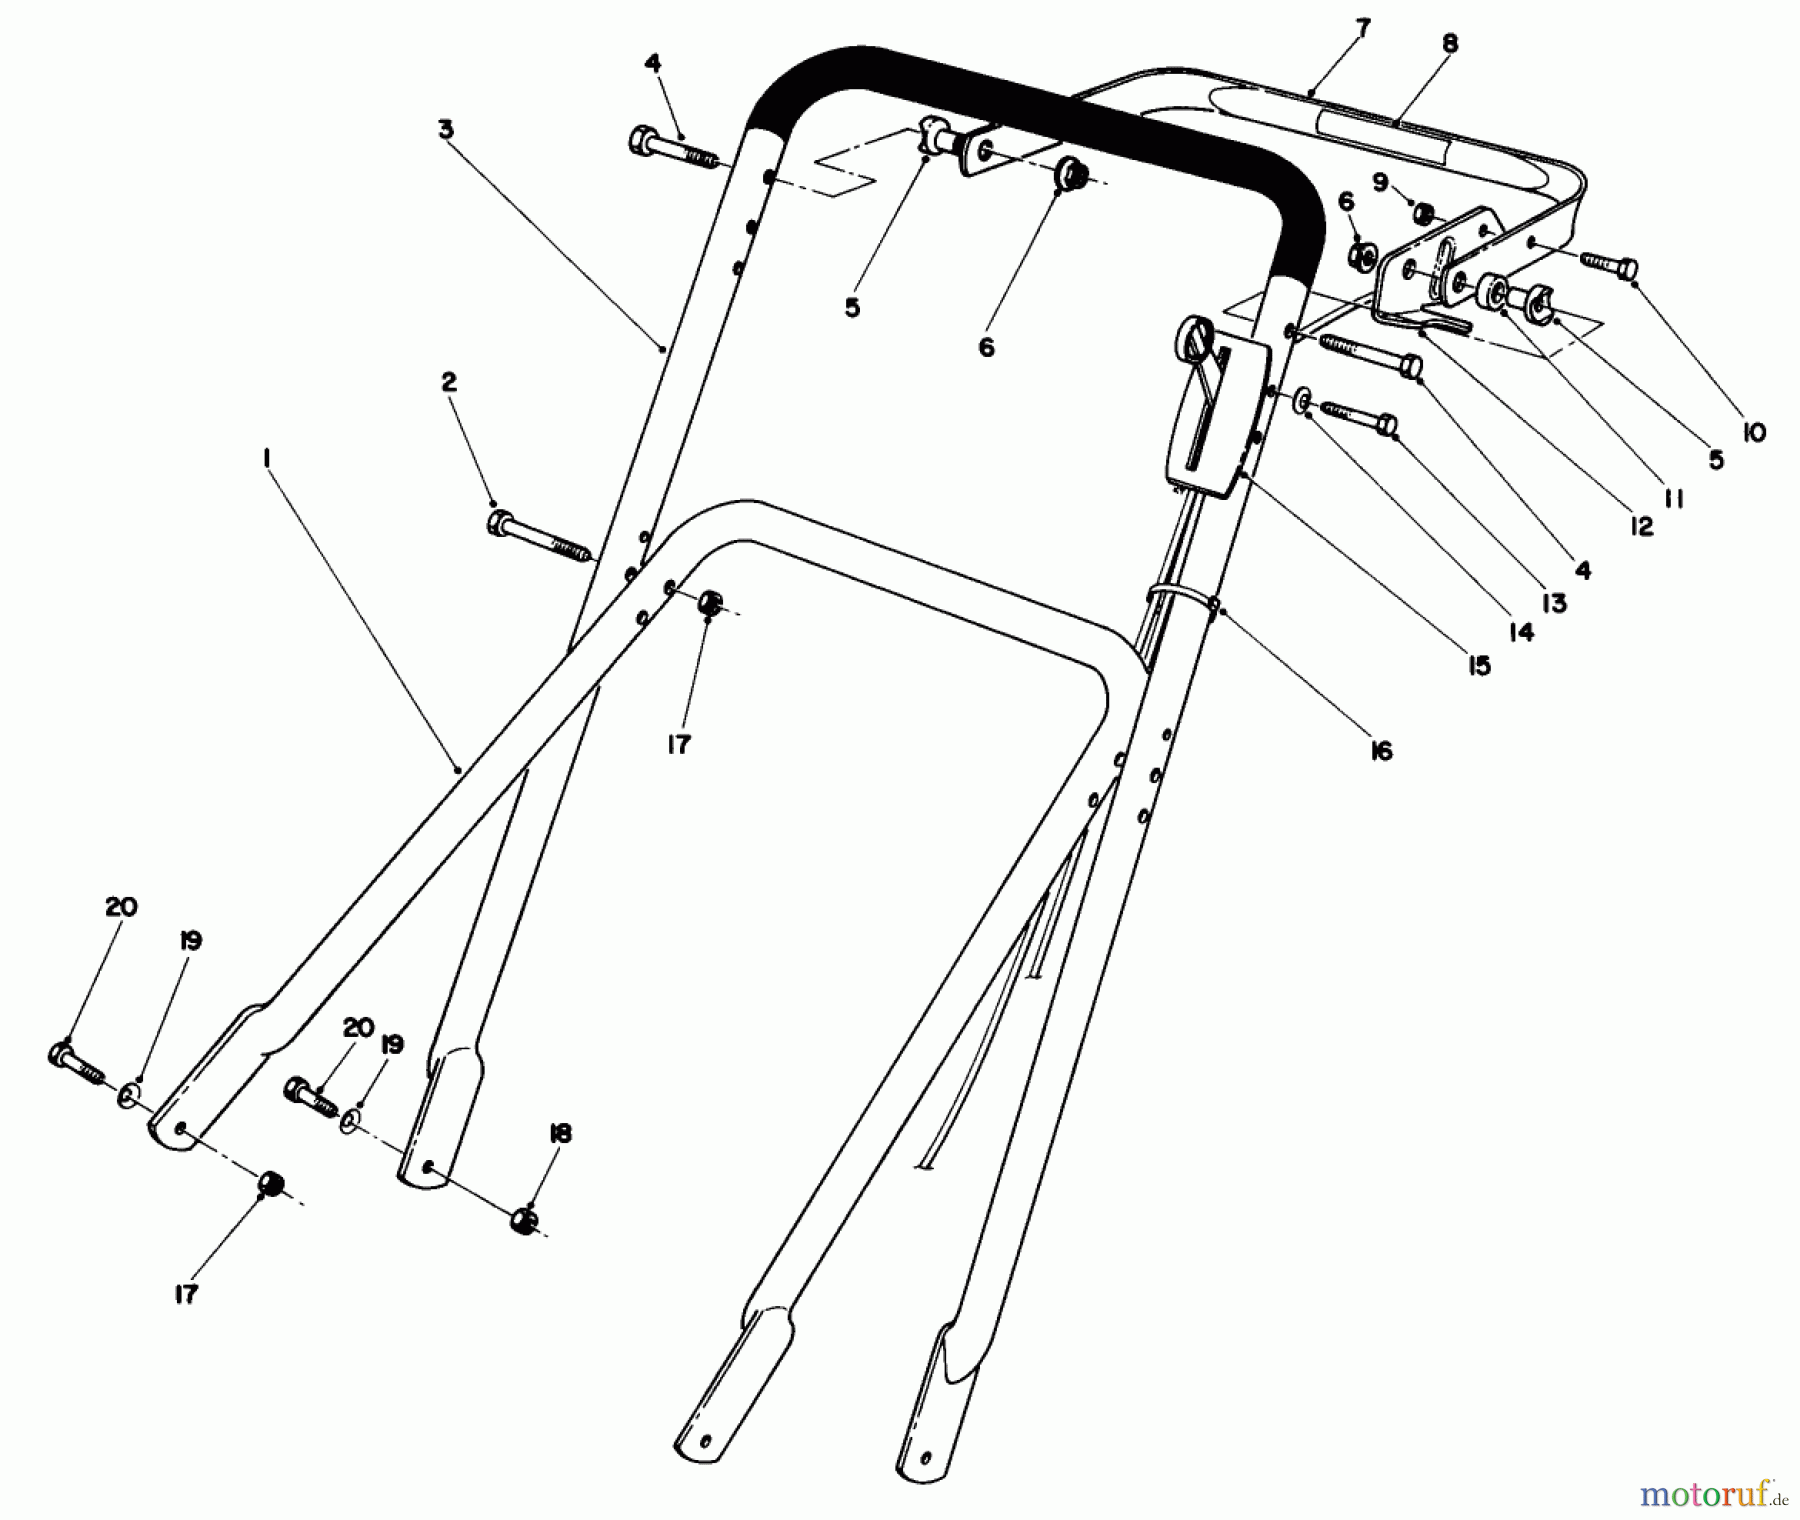  Toro Neu Mowers, Walk-Behind Seite 2 22680C - Toro Lawnmower, 1988 (8000001-8999999) HANDLE ASSEMBLY